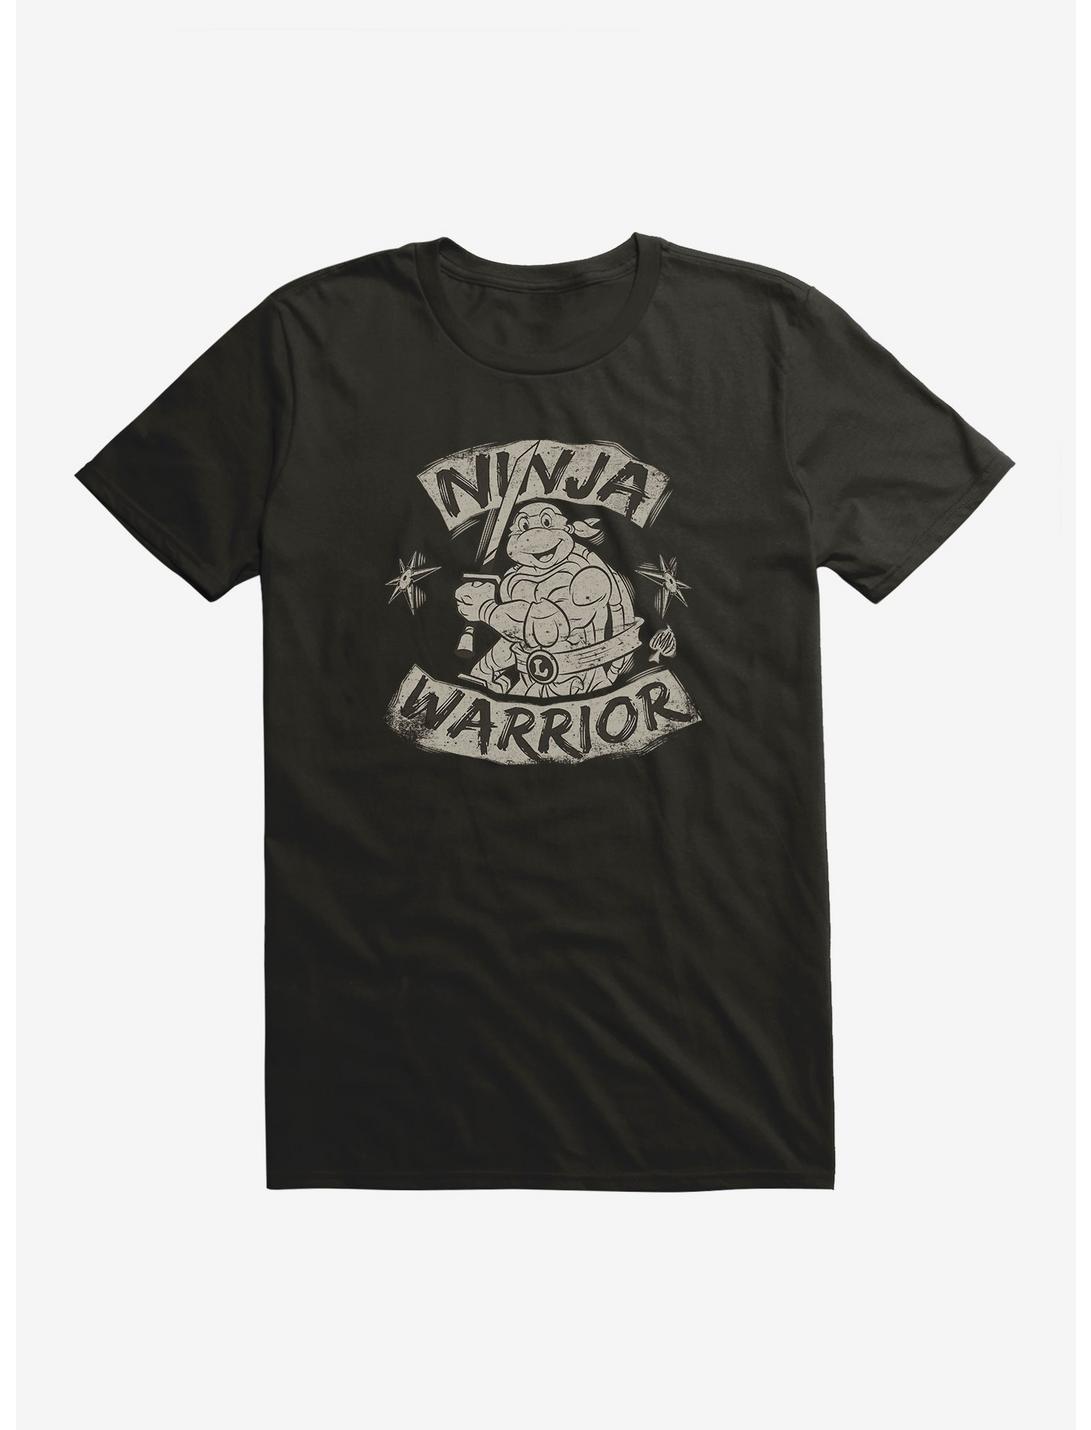 Teenage Mutant Ninja Turtles Leonardo Ninja Warrior T-Shirt, BLACK, hi-res